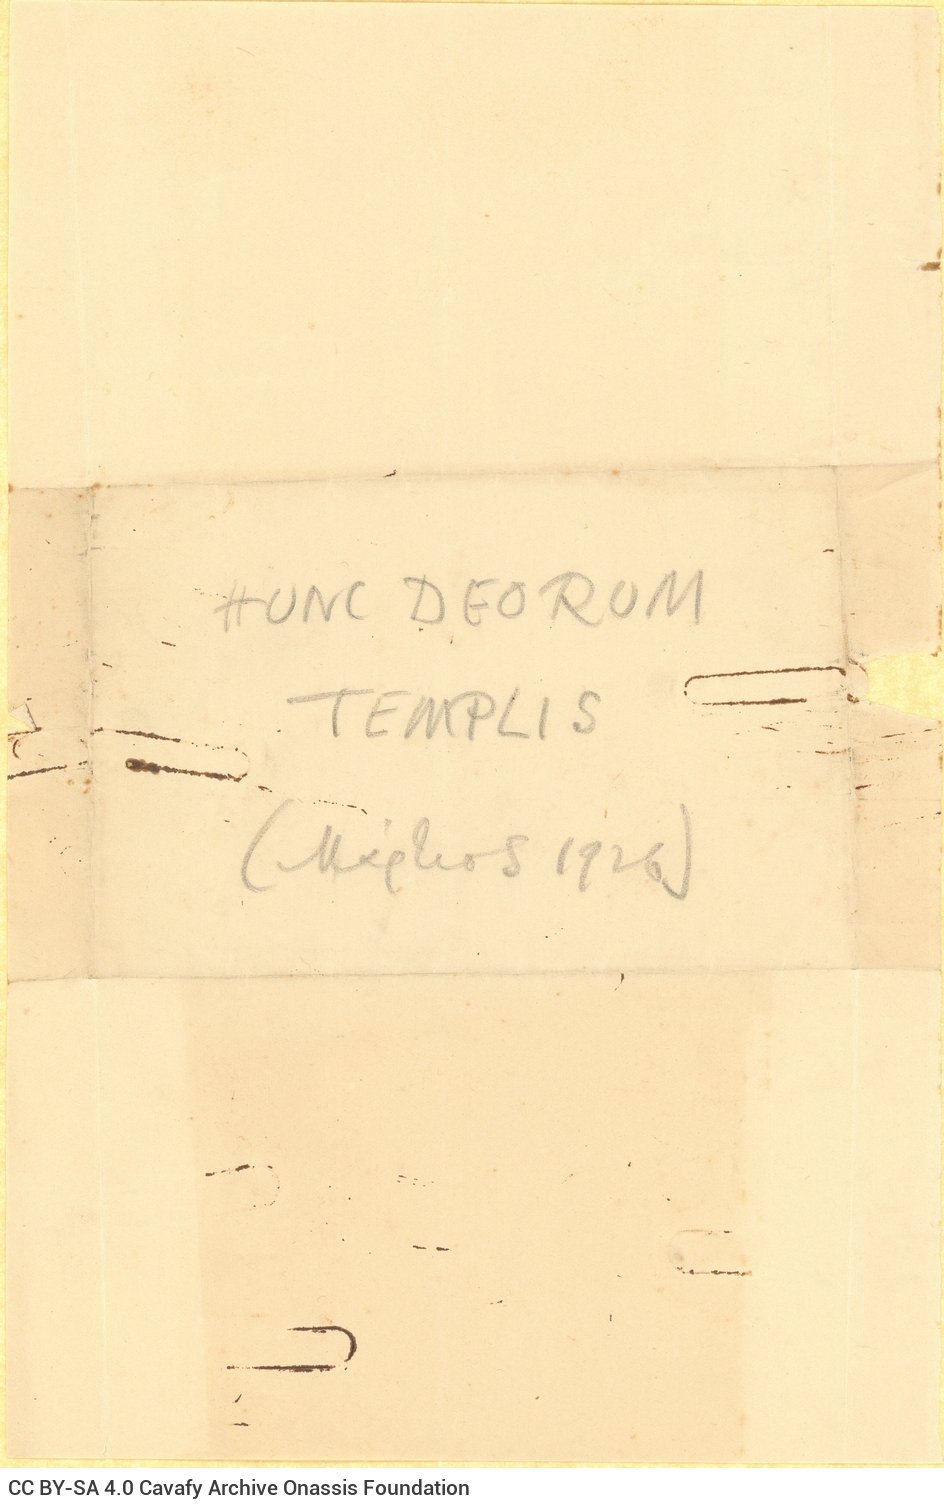 Χειρόγραφο σχεδίασμα του ποιήματος «Hunc Deorum Templis» στο verso έντυπου μο